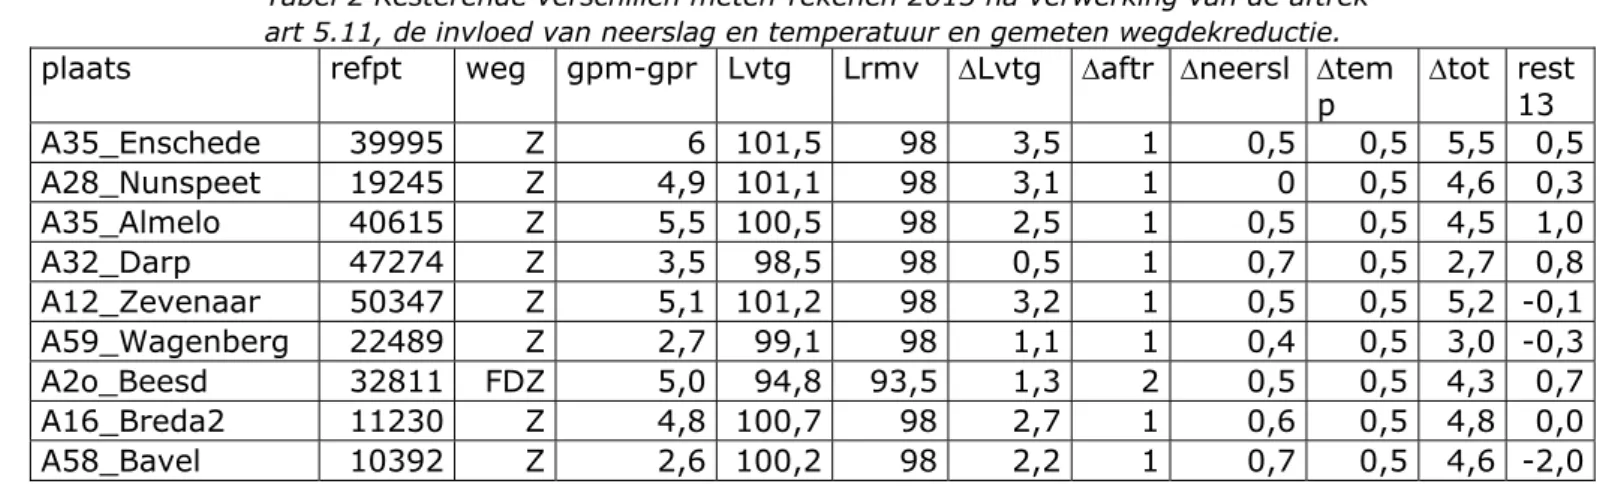 Tabel 2 Resterende verschillen meten-rekenen 2013 na verwerking van de aftrek  art 5.11, de invloed van neerslag en temperatuur en gemeten wegdekreductie